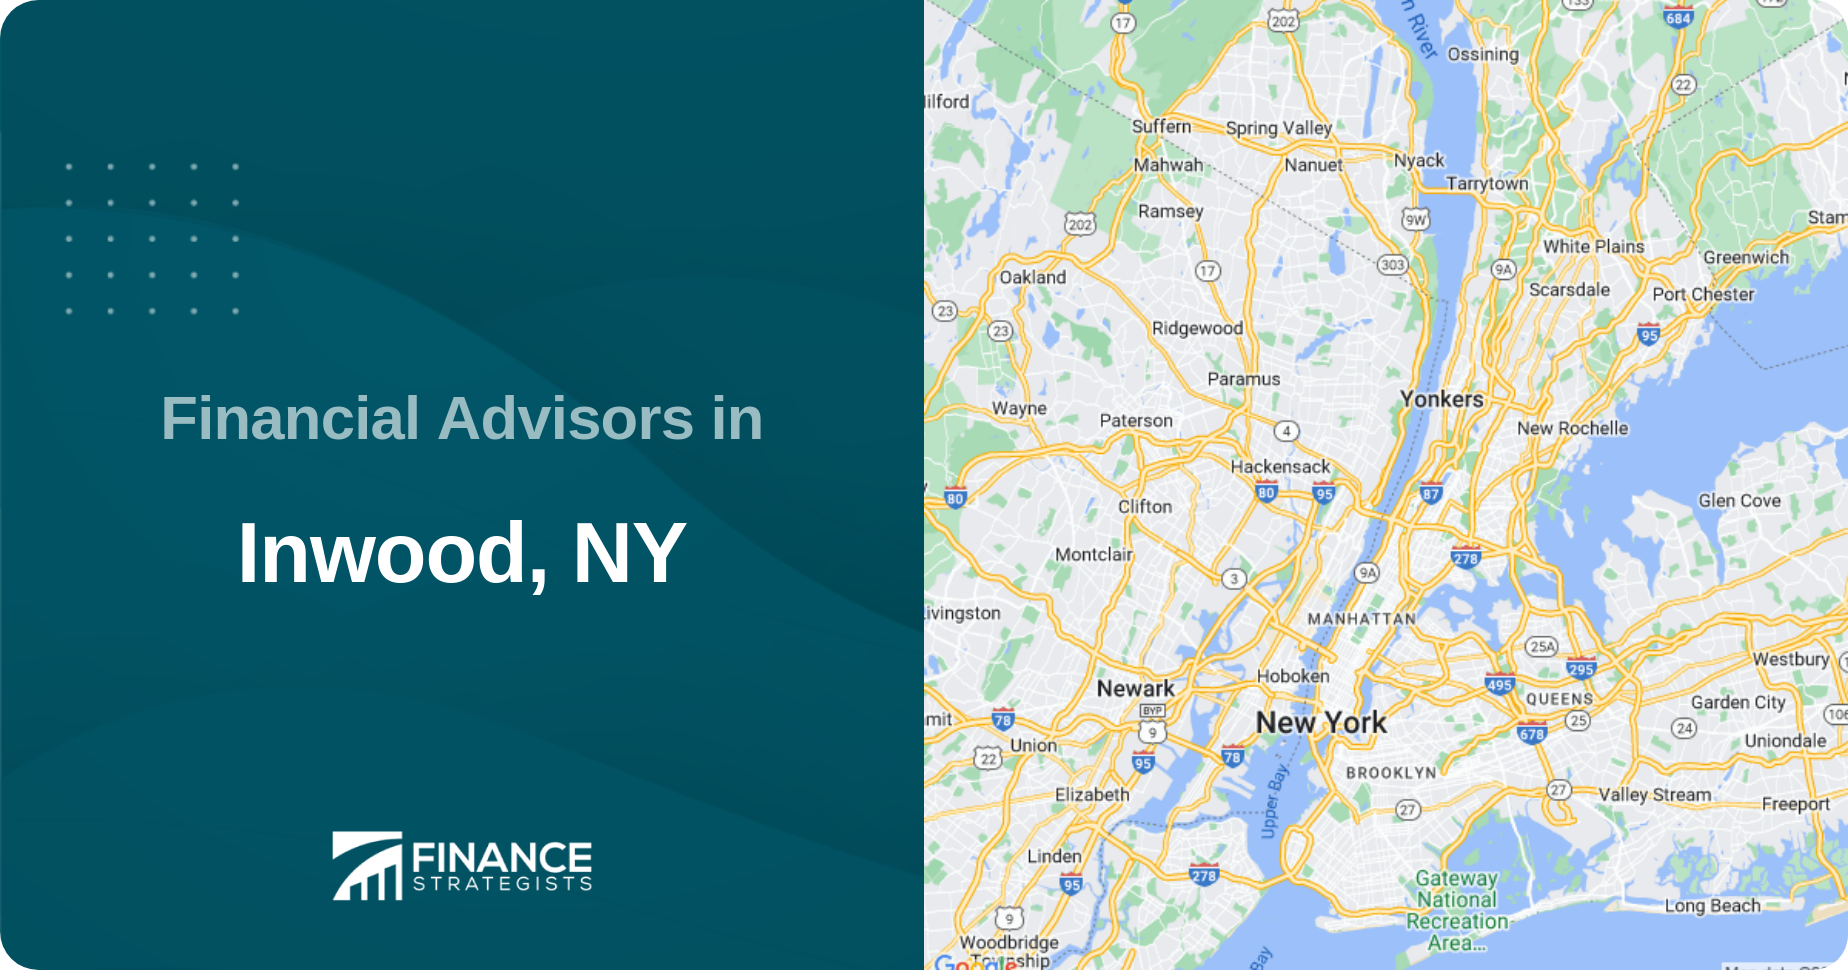 Financial Advisors in Inwood, NY